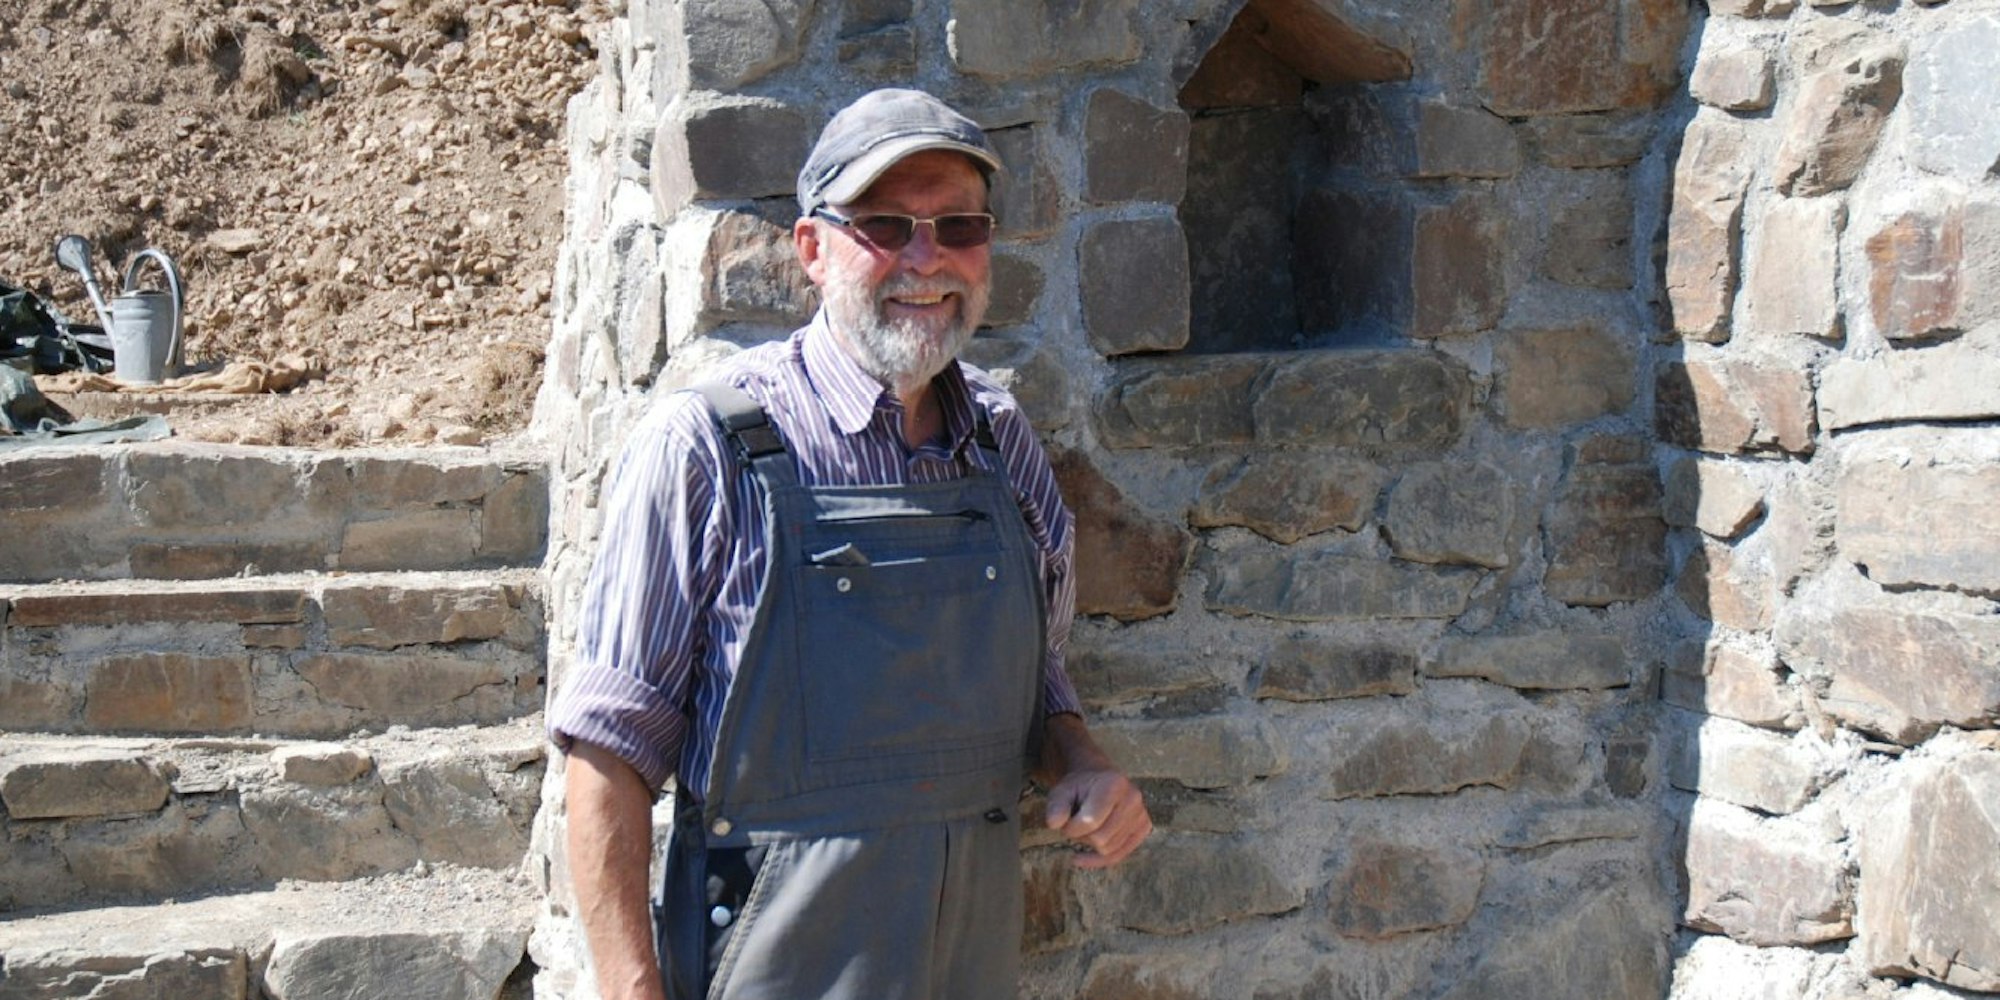 Ein Besuch der Ausgrabungen von Ephesus in der Türkei inspirierte den Künstler Paul Greven zu dem Bauwerk, das mit der Idee spielt, die Römer hätten steinerne Zeugnisse in Honerath hinterlassen.